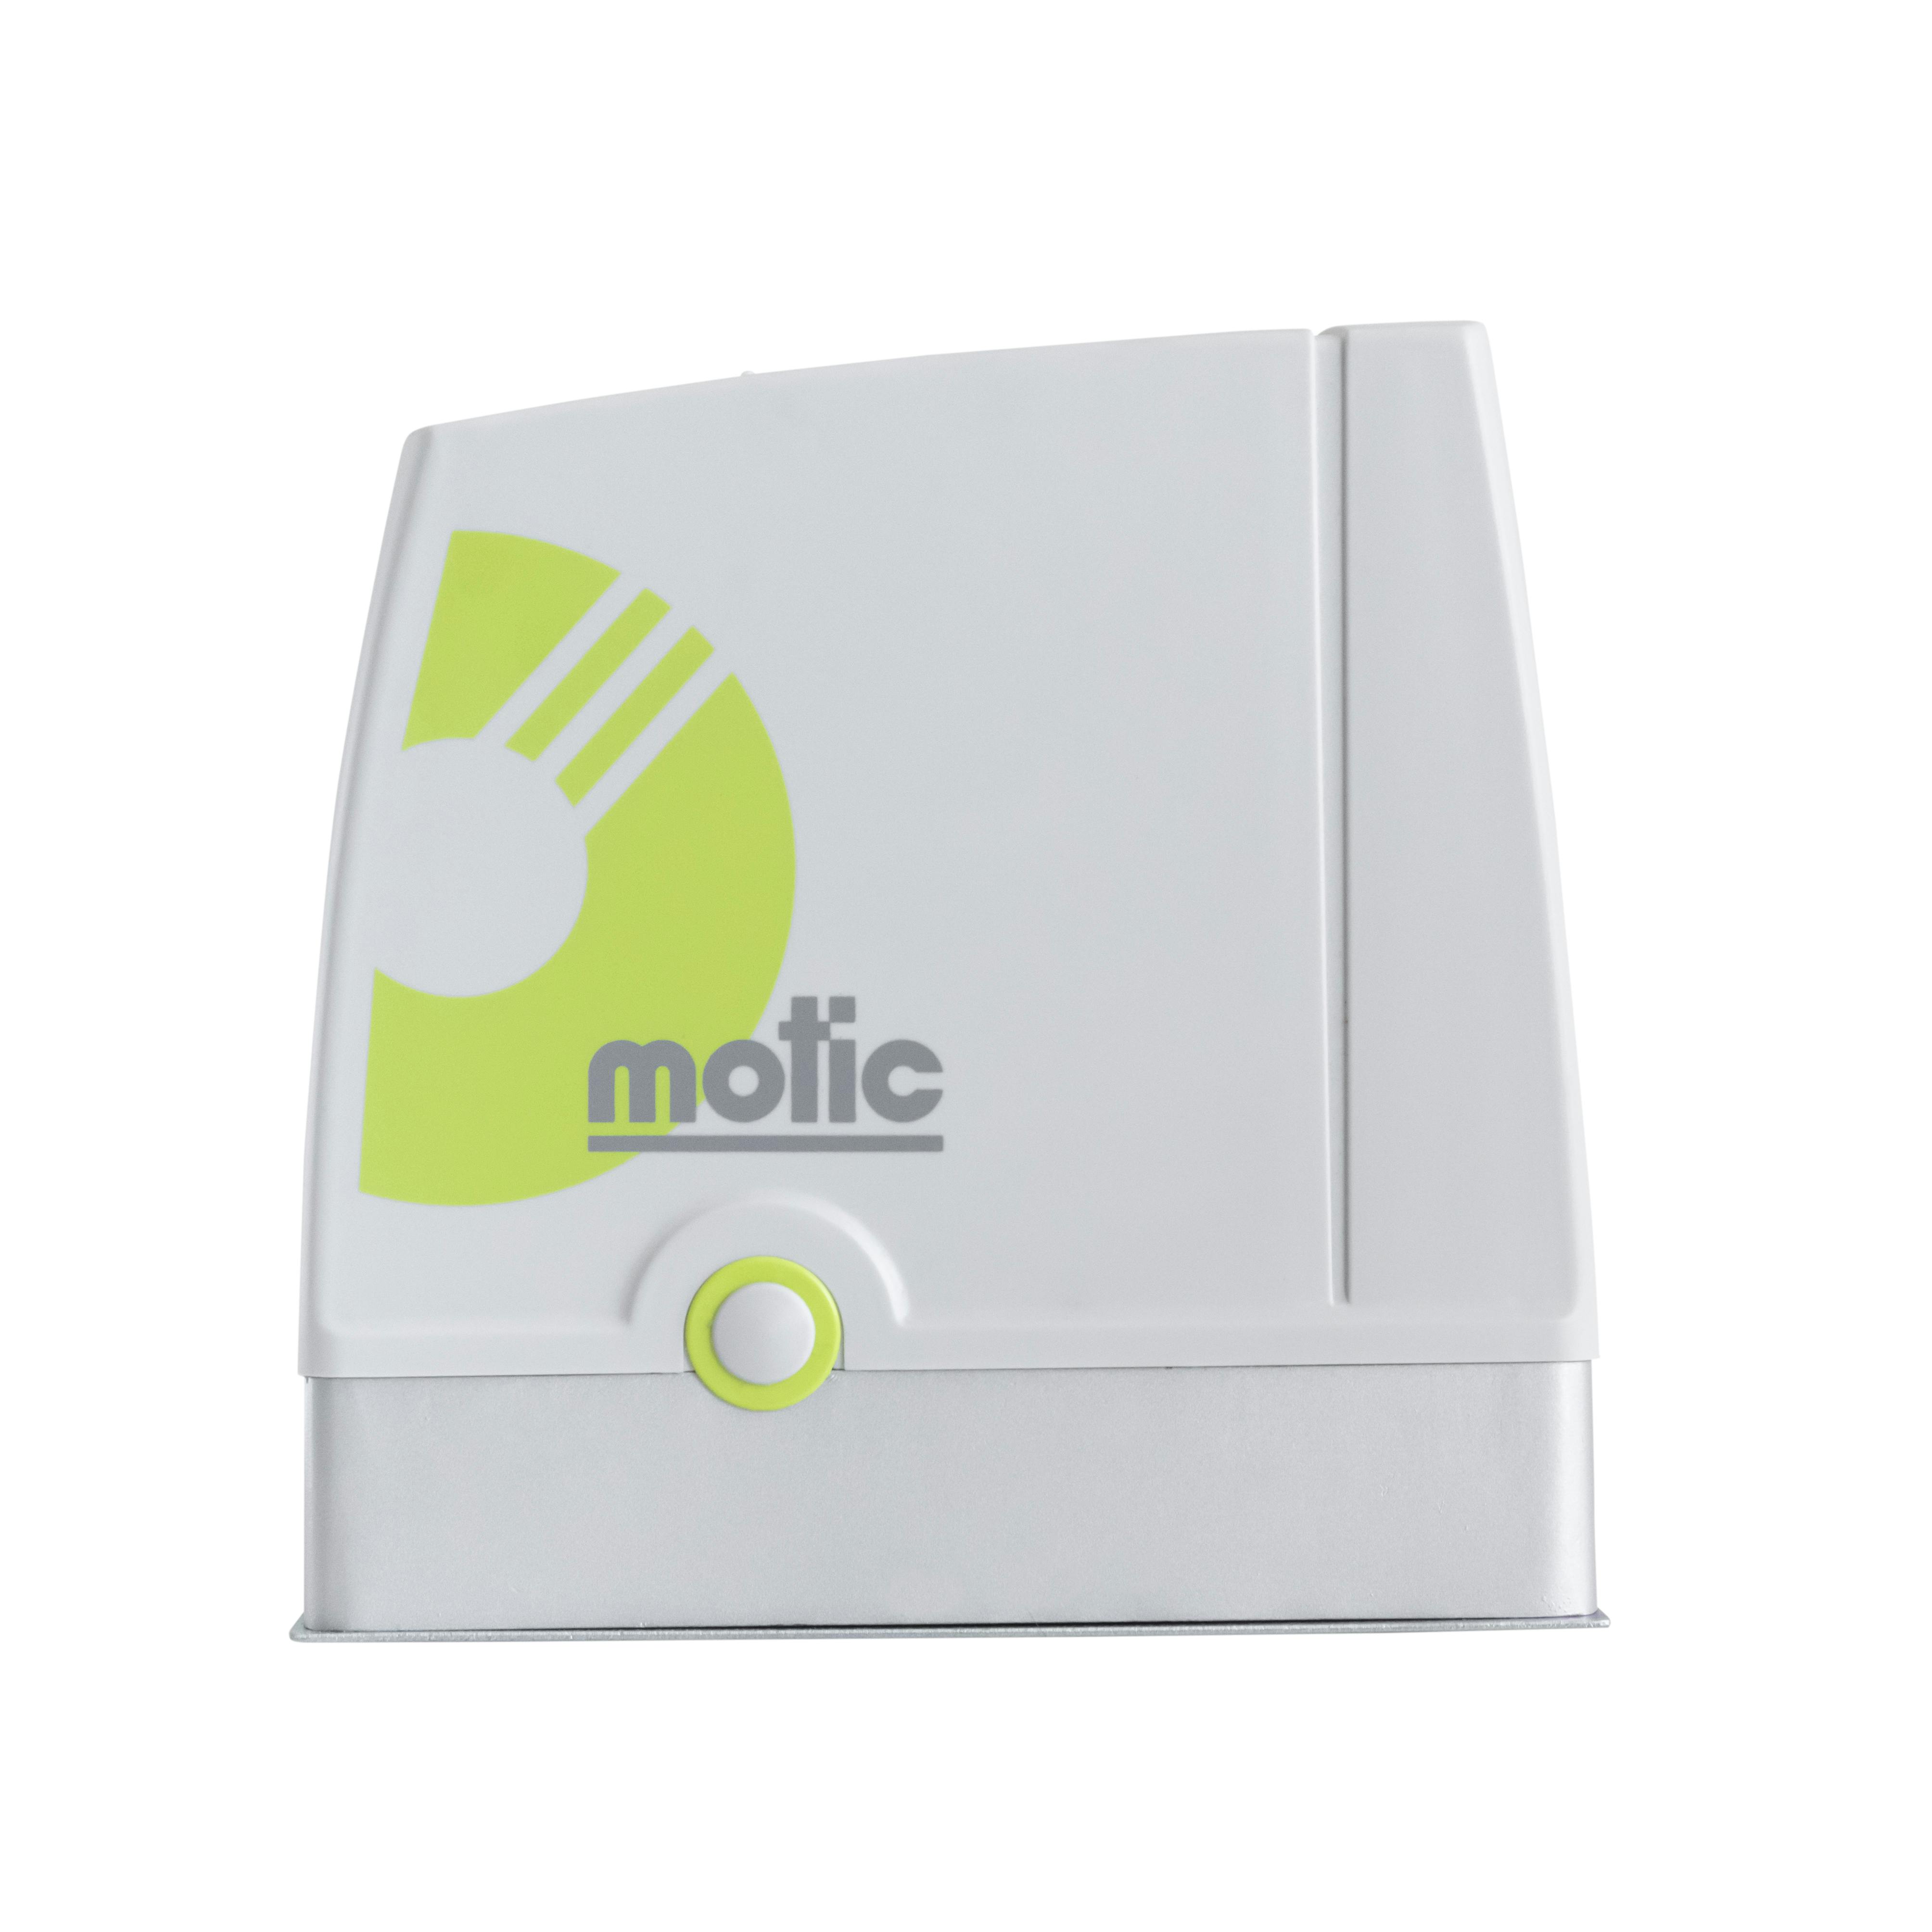 MOTIC Domo 4G- Kit Motor Puerta Batiente 2 Hojas - Motores para